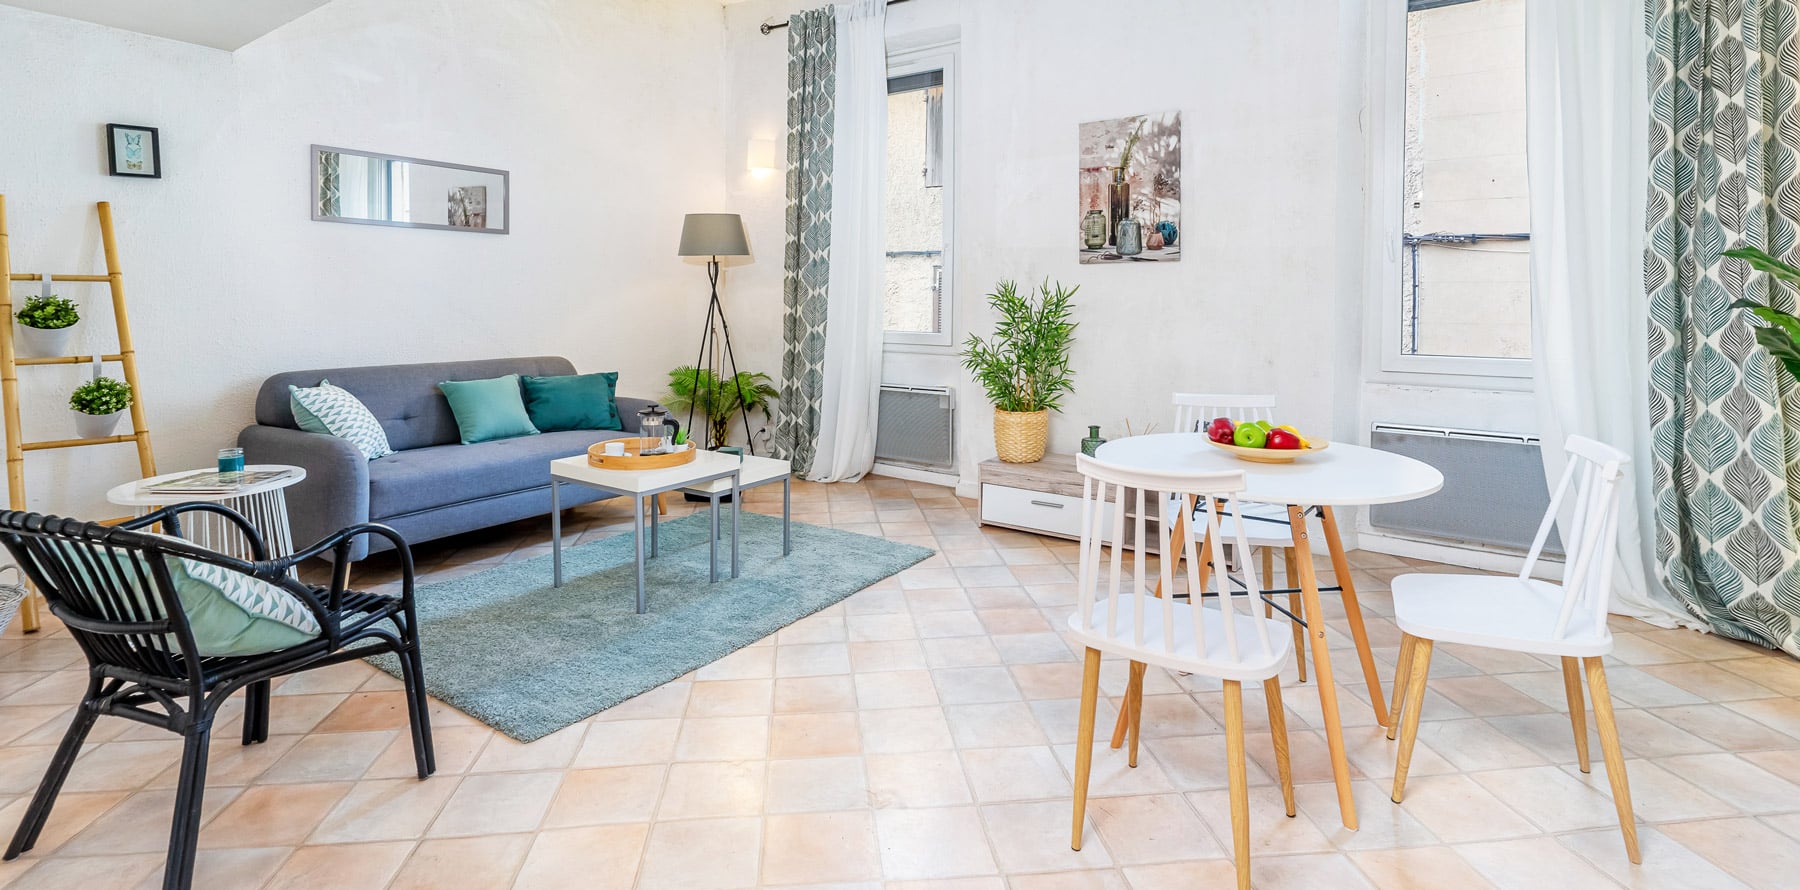 Home-Staging-Aix-en-Provence-Angeline-Perconte-Duplex-séjour